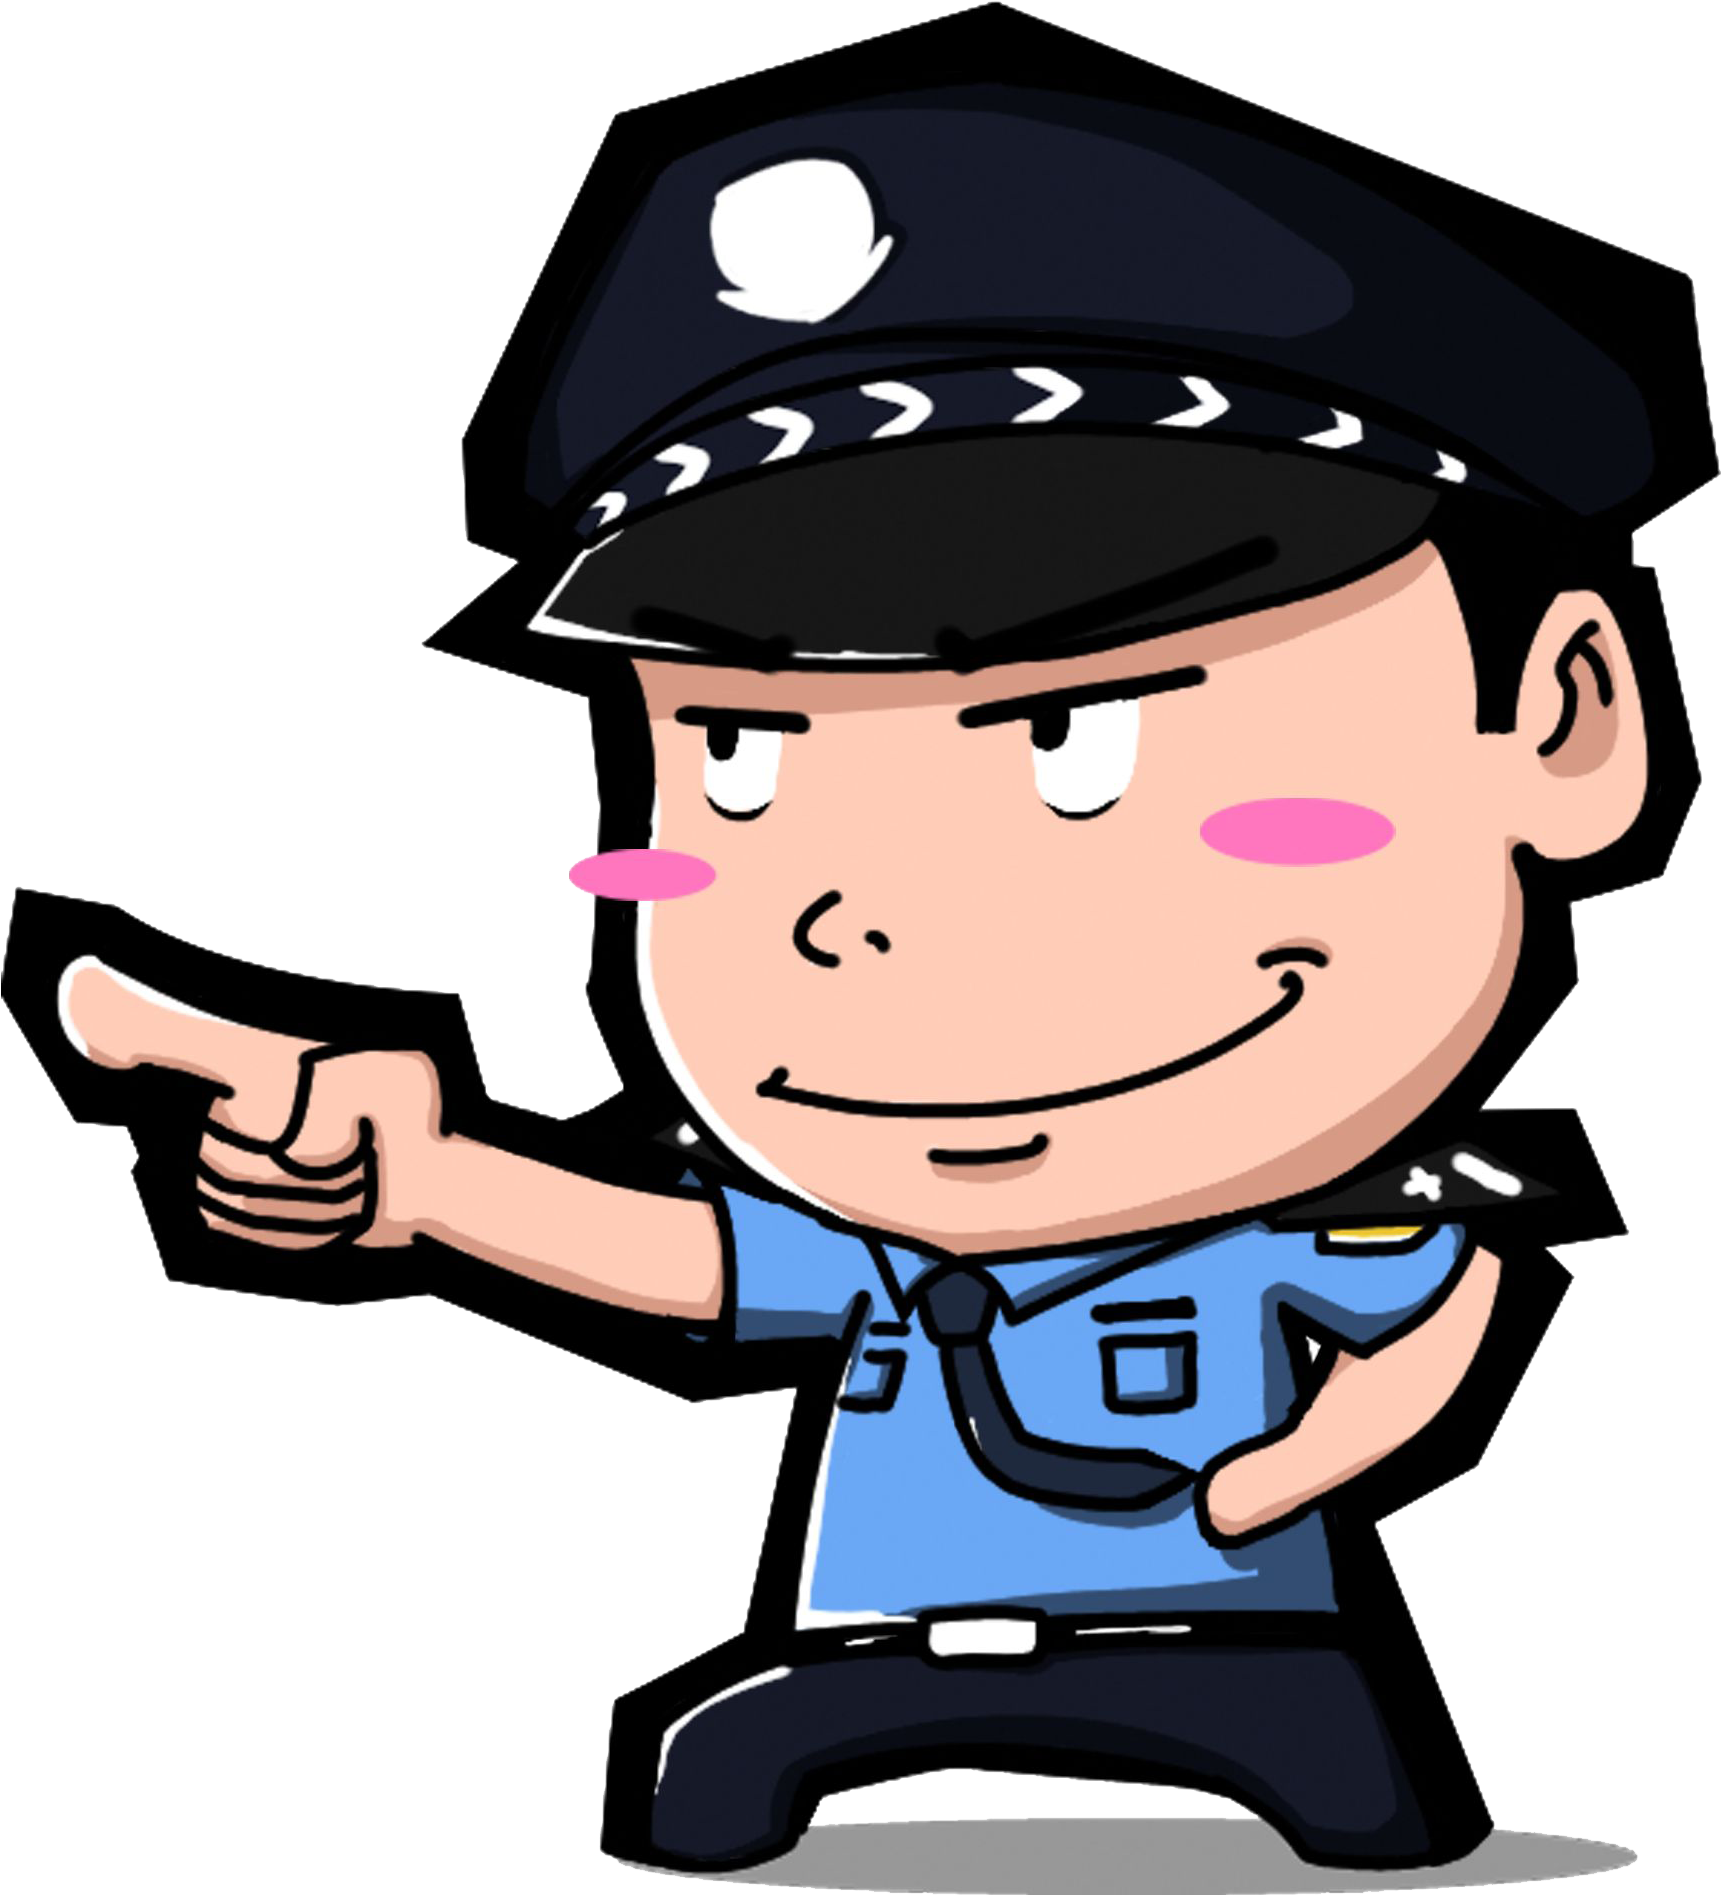 Police Officer Cartoon - Police Officer Cartoon (2362x2362)